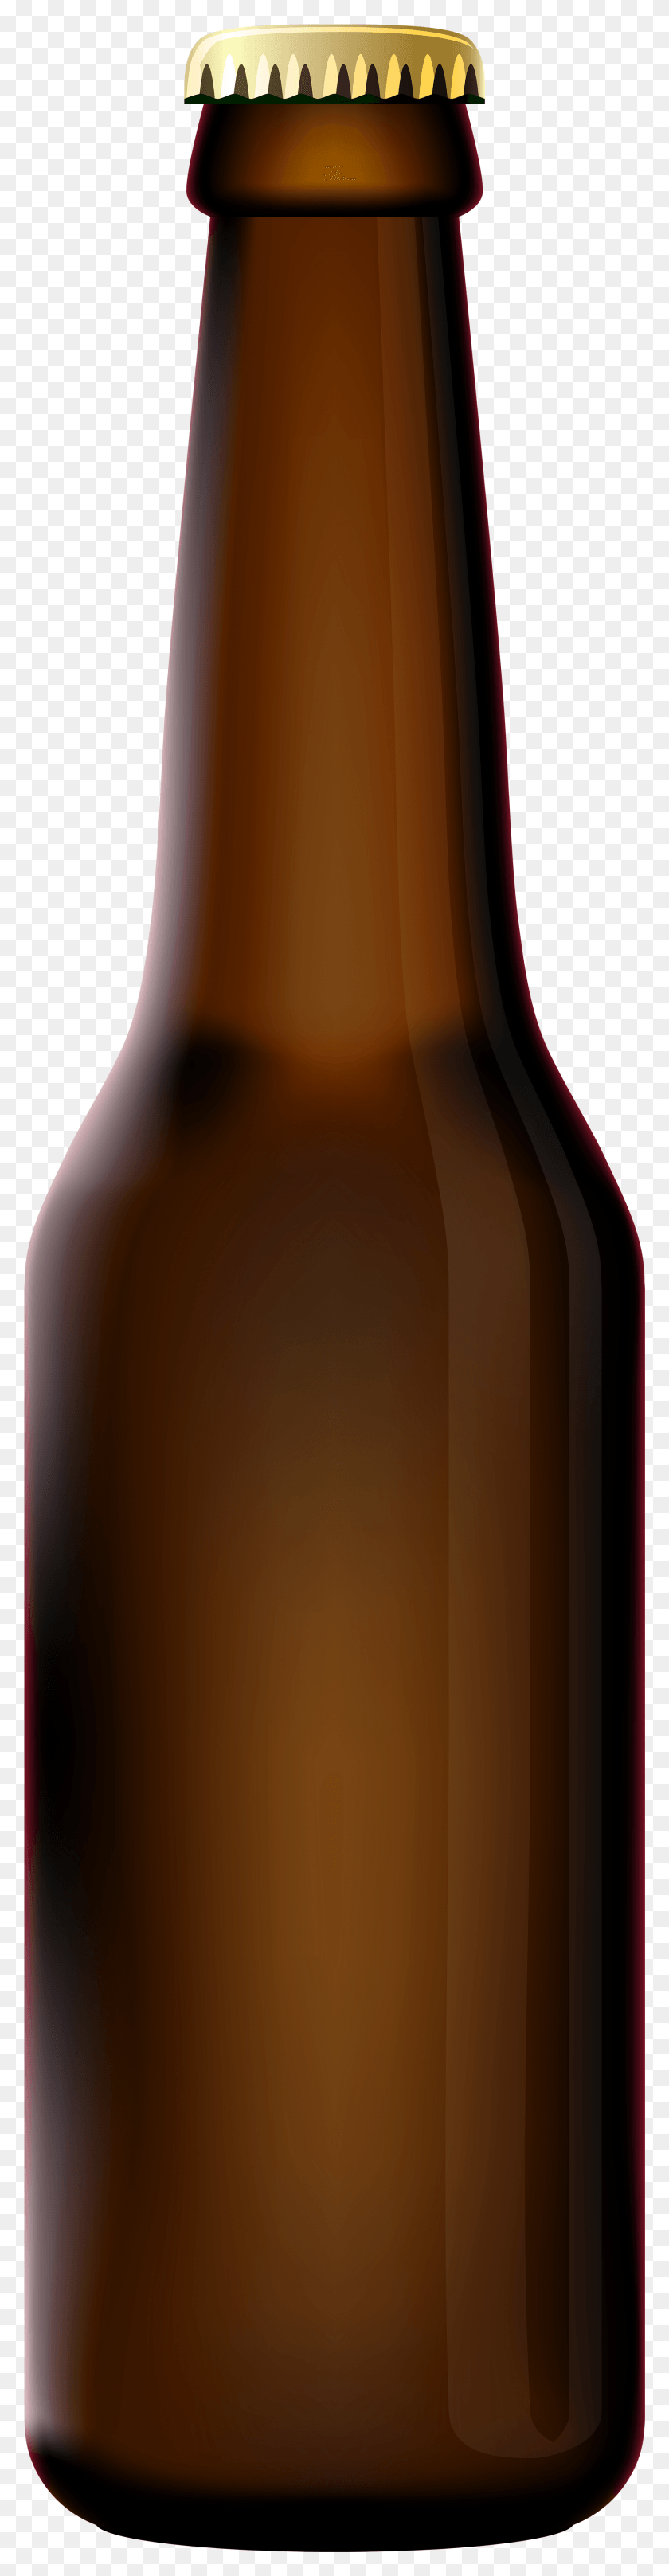 1698x6912 Пивная Бутылка Картинки Прозрачная Пивная Бутылка, Пиво, Алкоголь, Напиток Png Скачать